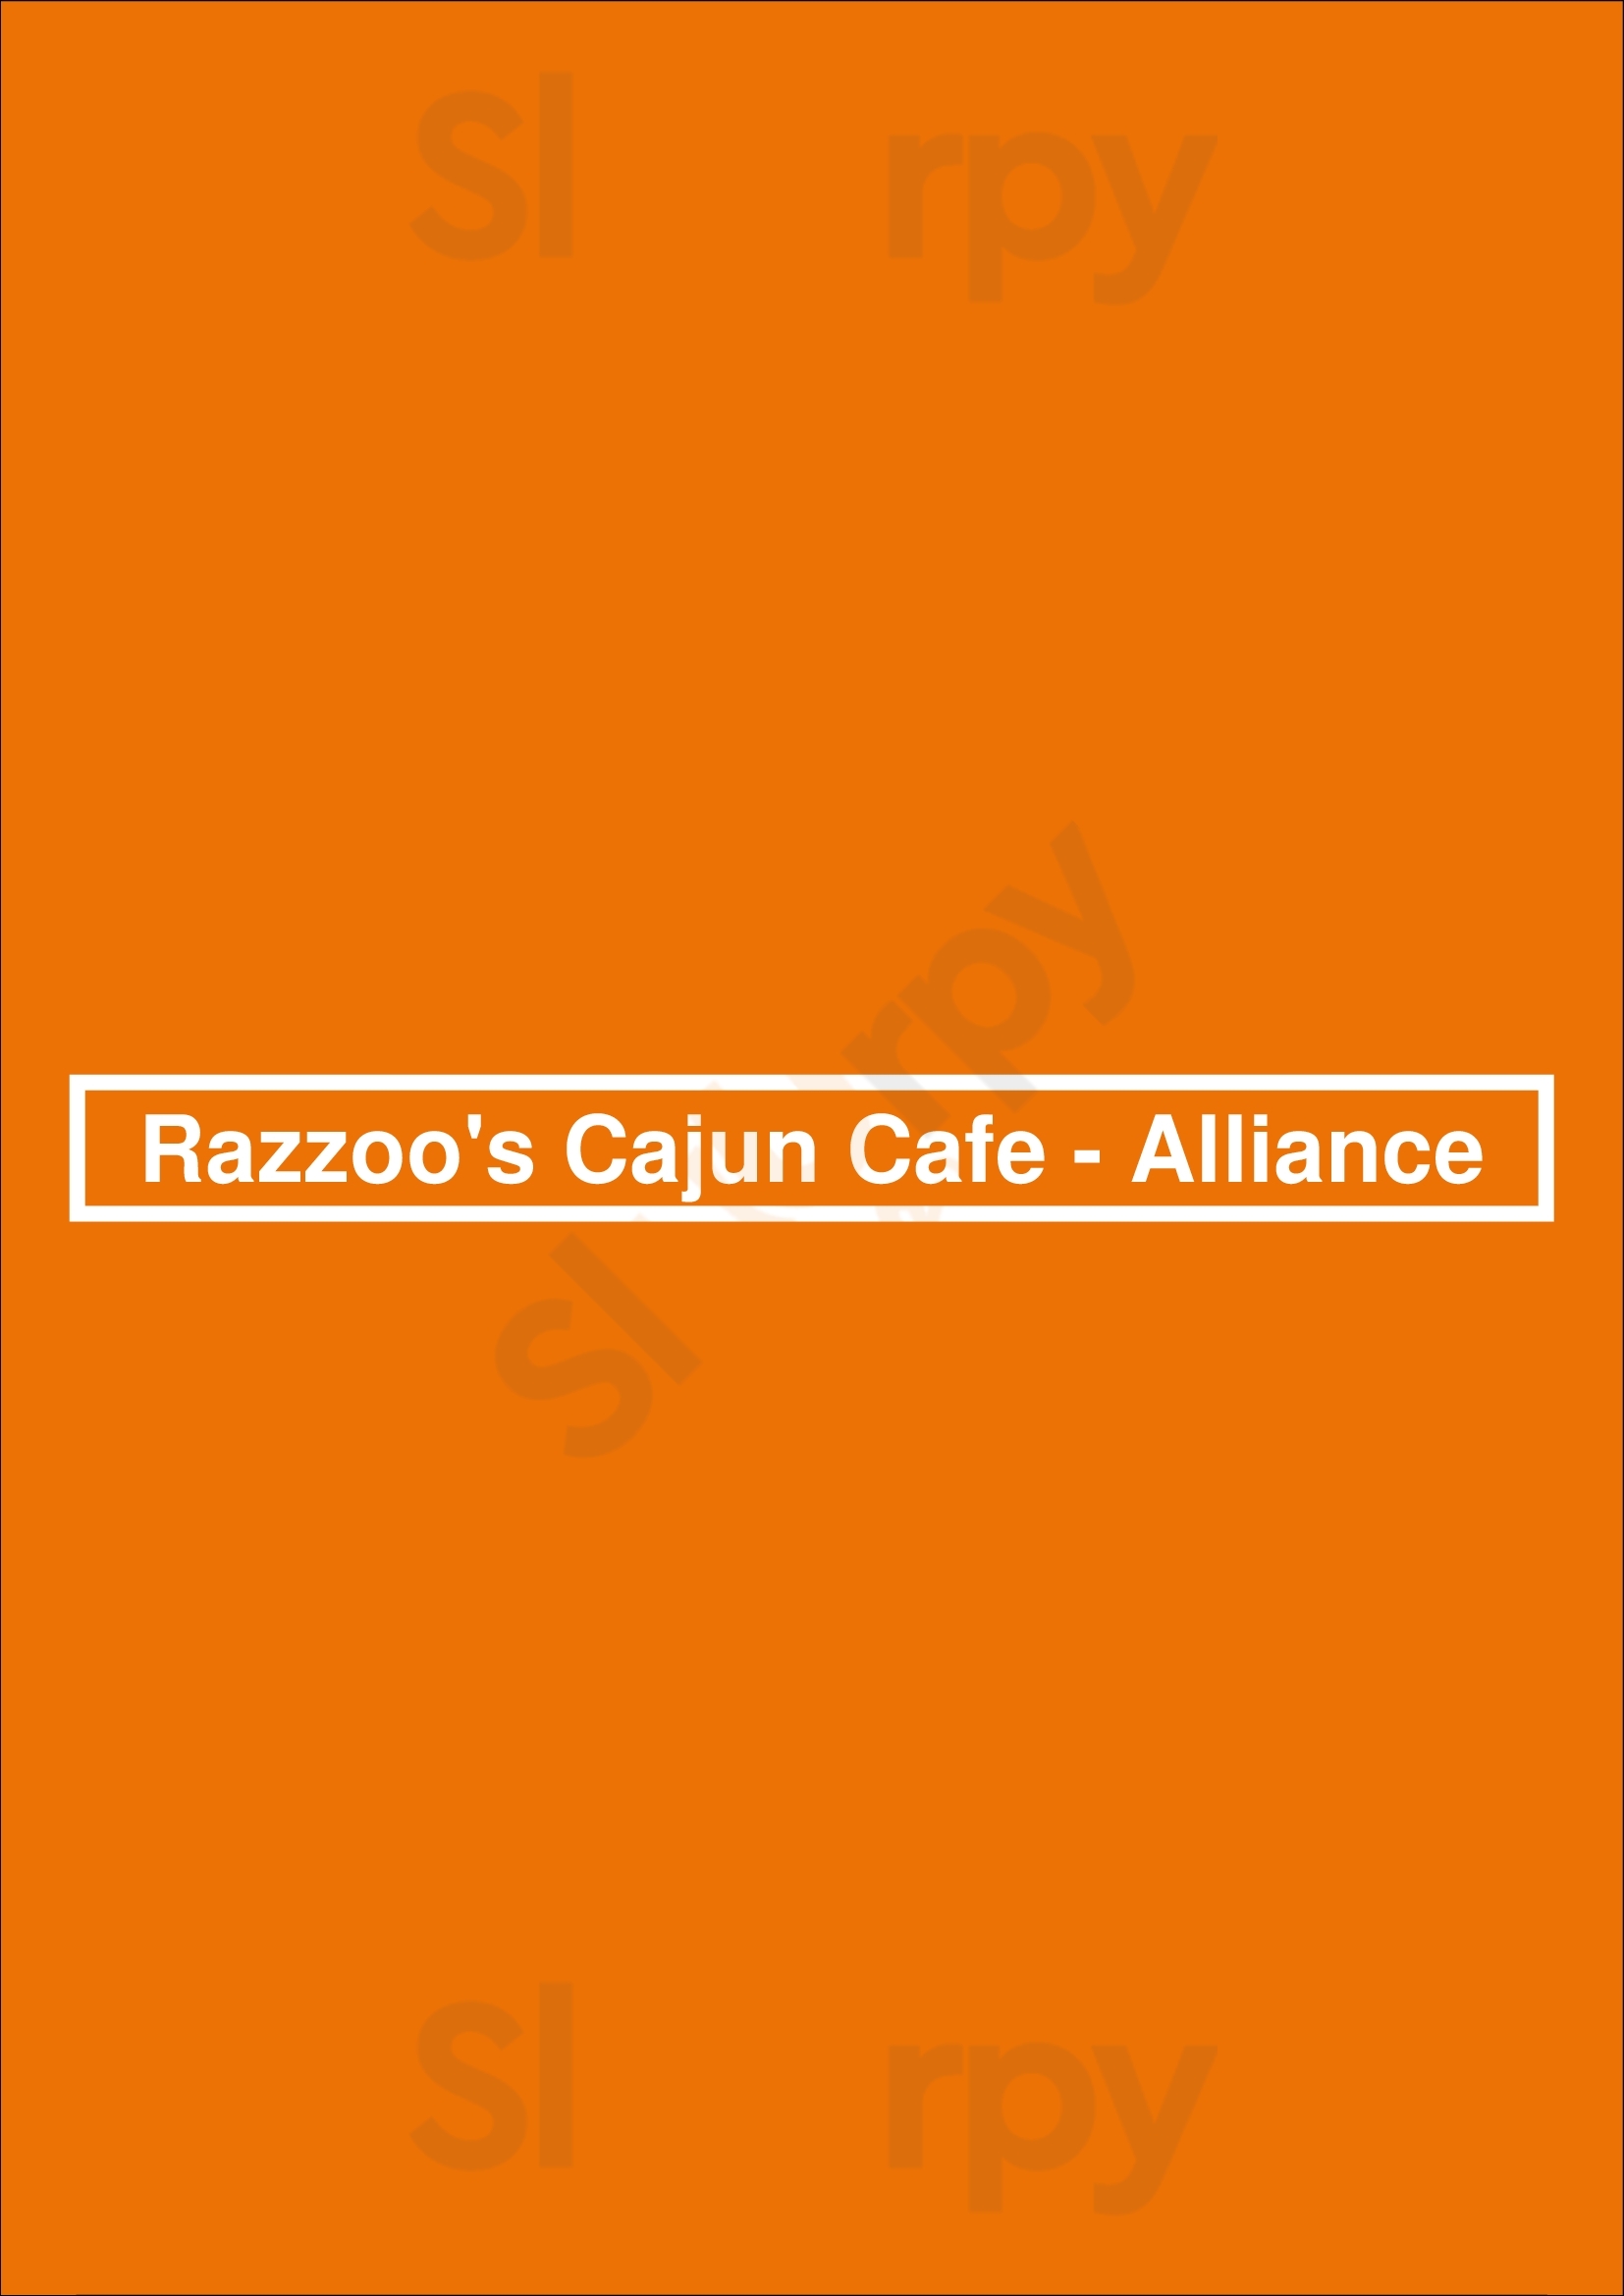 Razzoo's Fort Worth Menu - 1